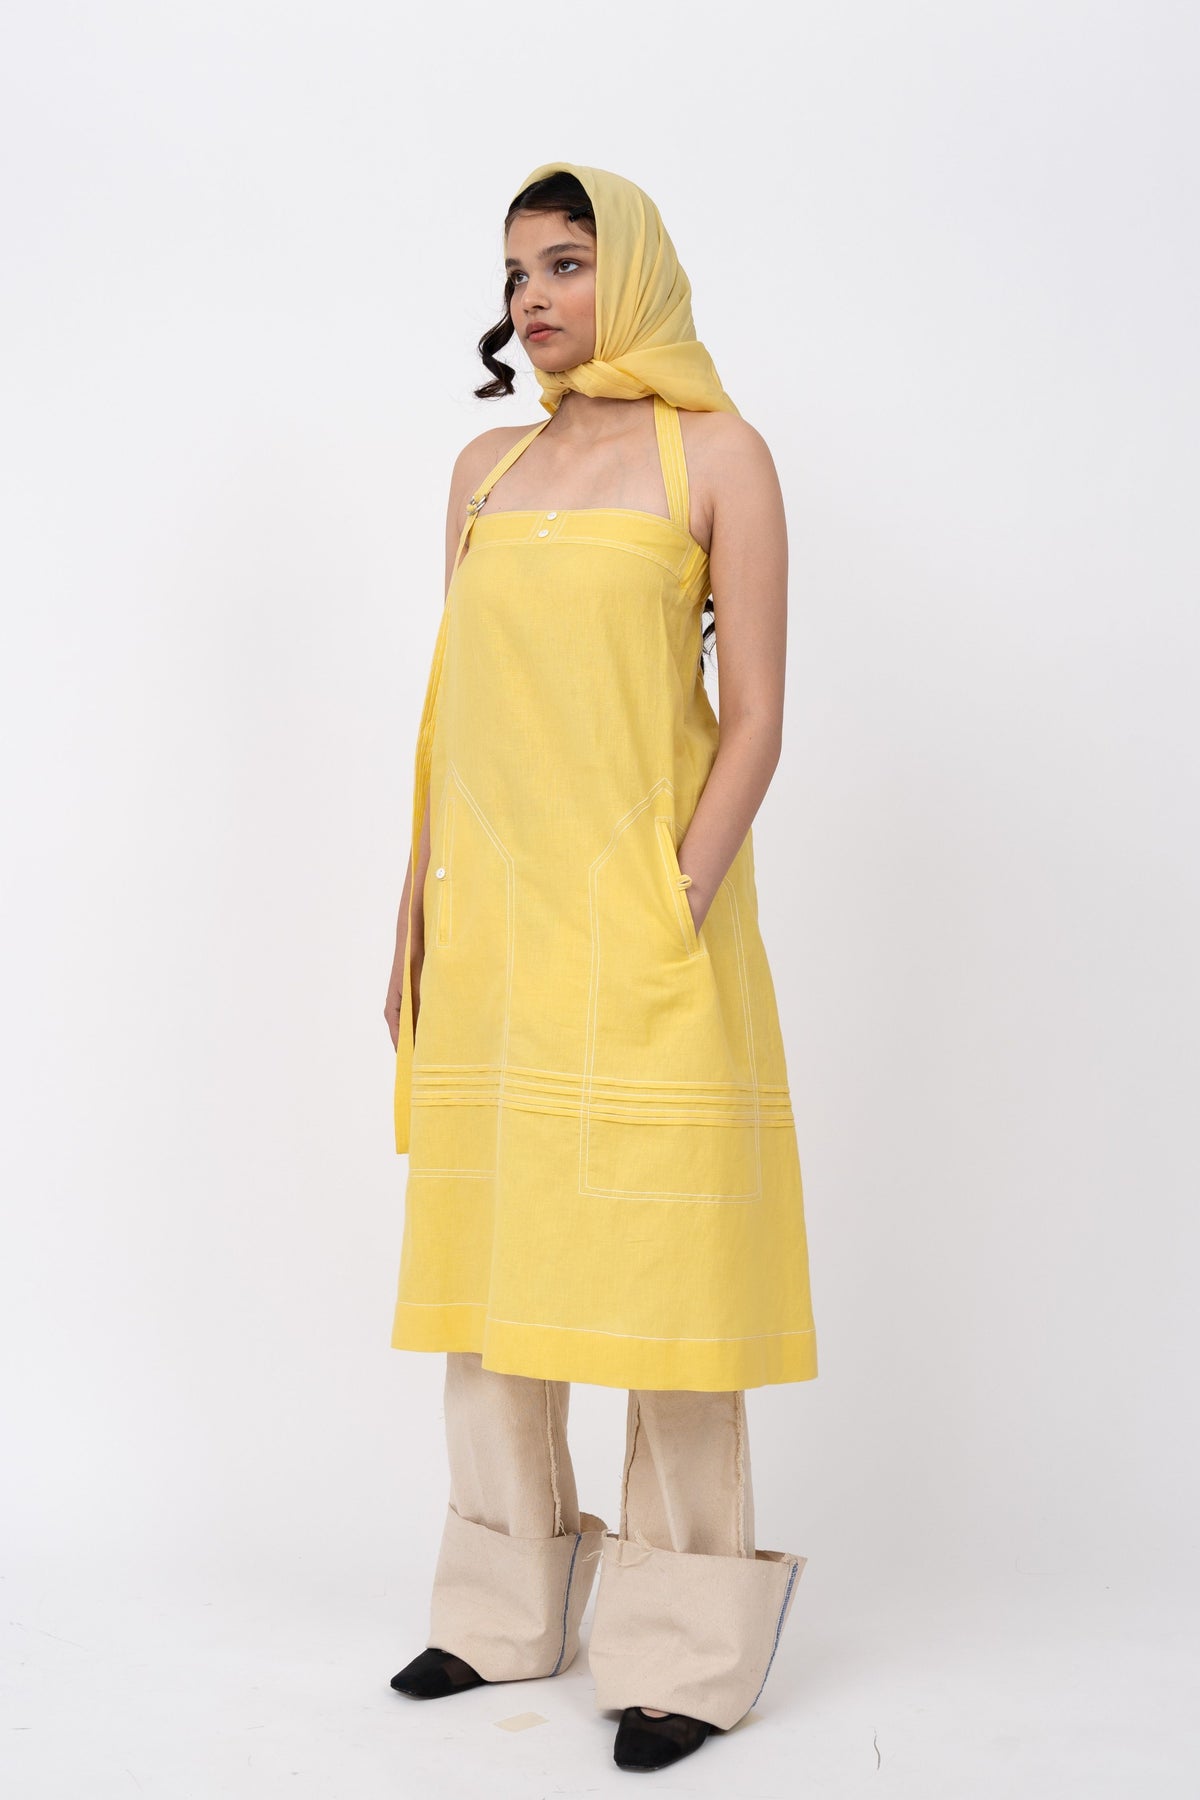 Lemonade Dress